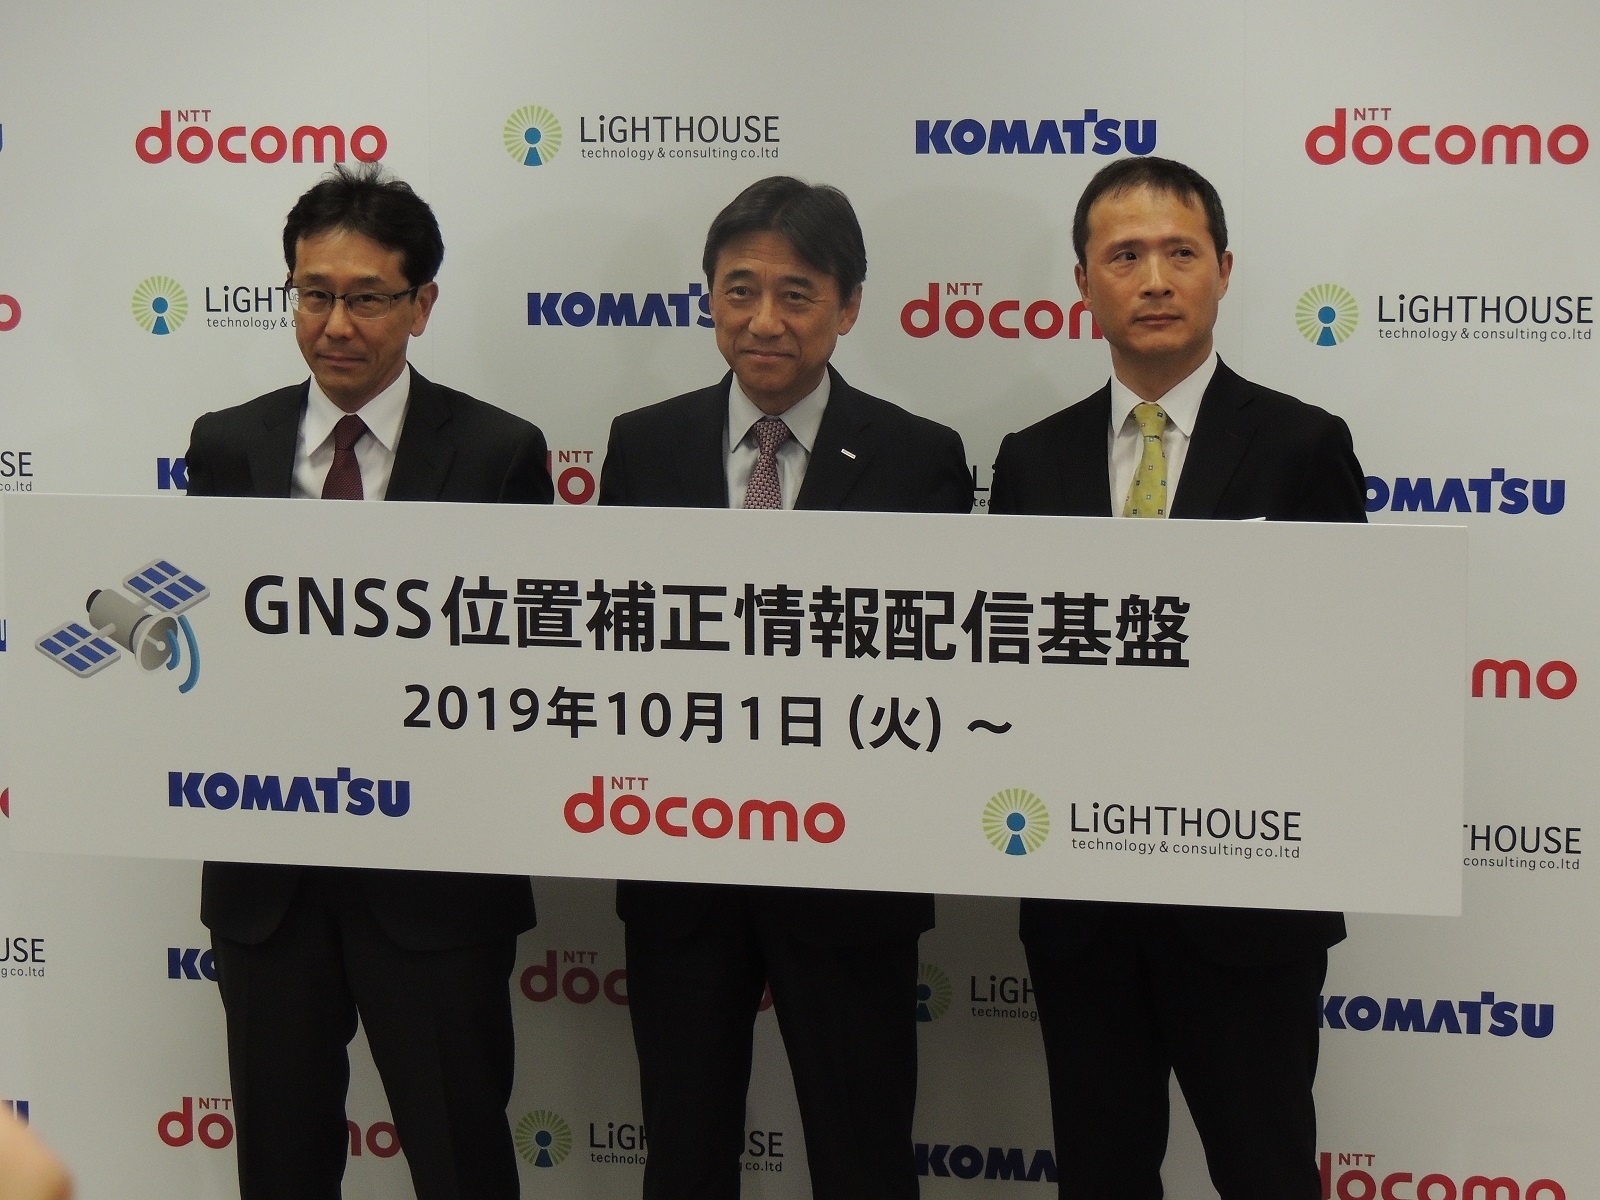 左からコマツの小川啓之社長、NTTドコモの吉沢和弘社長、ライトハウステクノロジー・アンド・コンサルティングの前田裕昭社長 